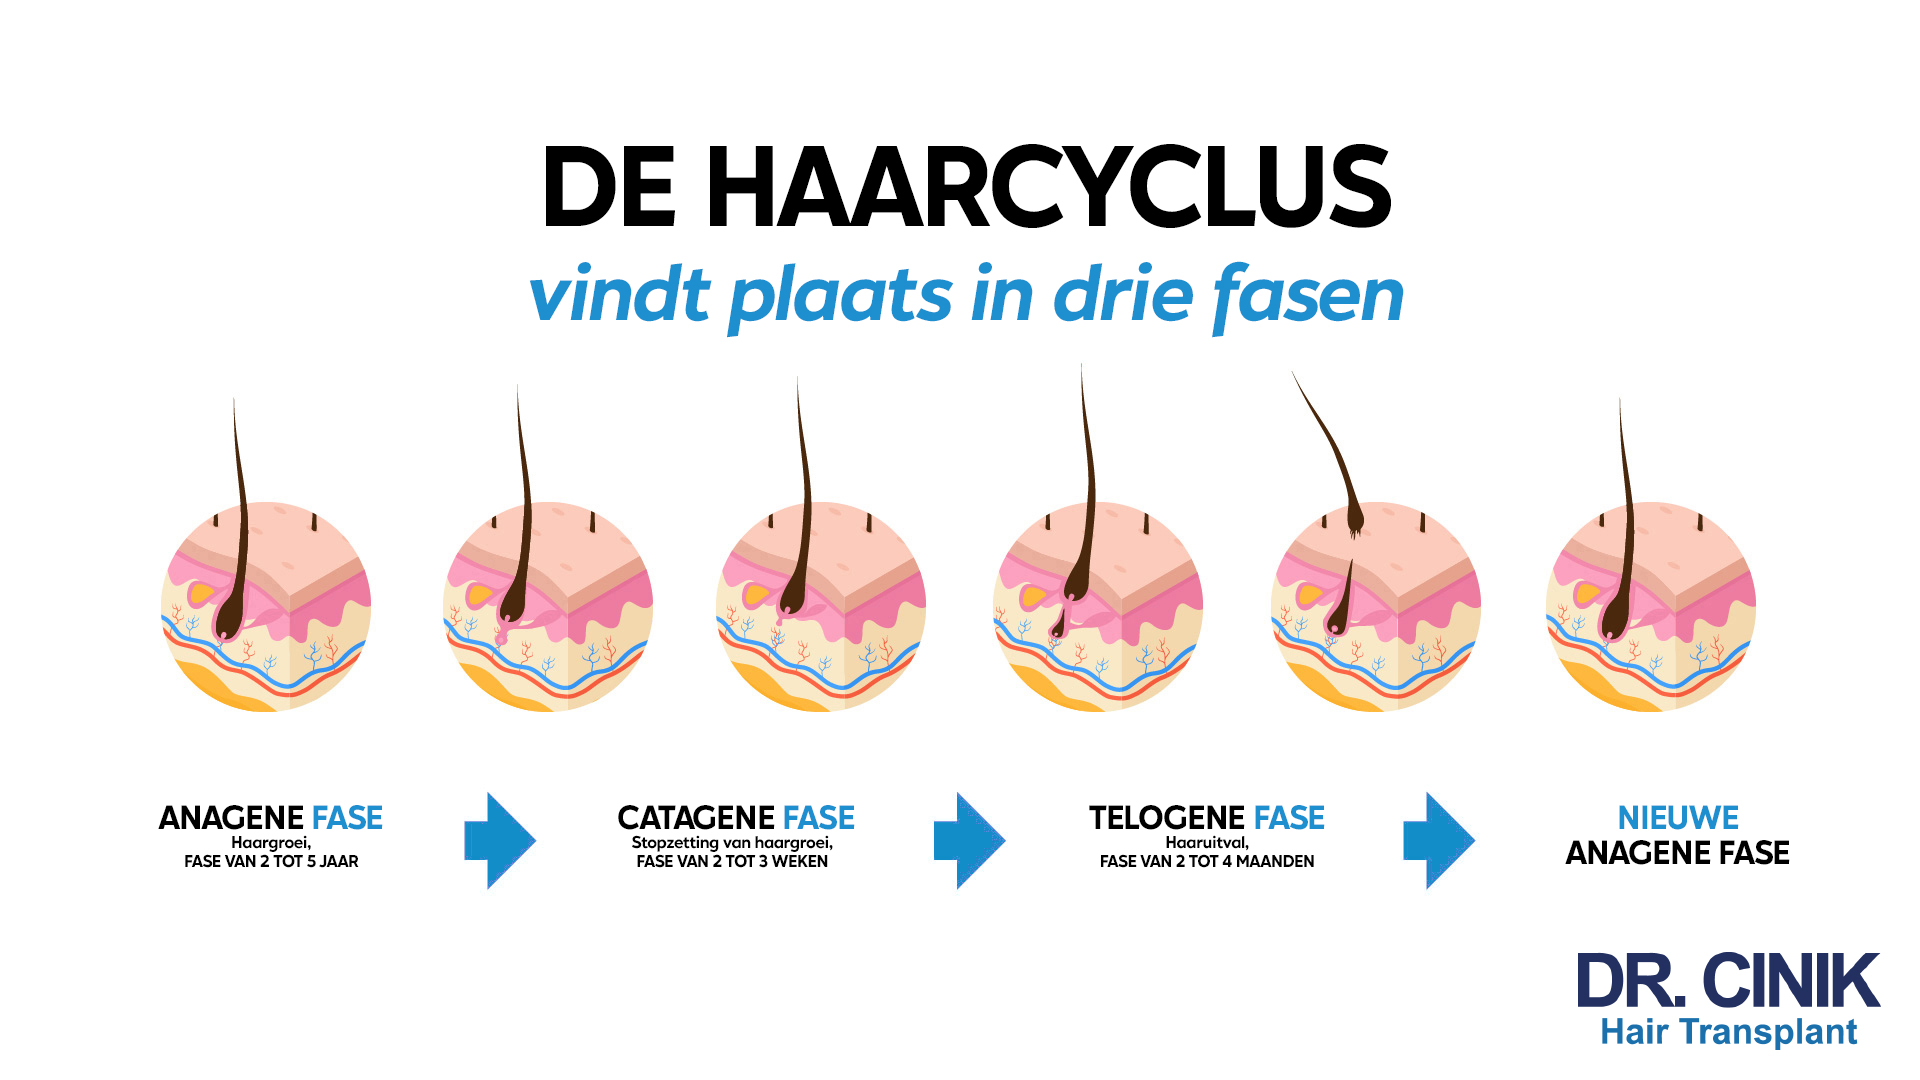 Een informatieve afbeelding die de drie fasen van de haarcyclus illustreert, gepresenteerd in het Nederlands. Bovenaan staat 'DE HAARCYCLUS vindt plaats in drie fasen'. Vier ronde, schematische afbeeldingen tonen de fasen van de haarcyclus met een enkele haarstreng in verschillende stadia van groei en rust. Van links naar rechts: 'ANAGENE FASE - Haargroei, FASE VAN 2 TOT 5 JAAR', 'CATAGENE FASE - Stopzetting van haargroei, FASE VAN 2 TOT 3 WEKEN', gevolgd door een pijl naar 'TELOGENE FASE - Haaruitval, FASE VAN 2 TOT 4 MAANDEN', en eindigend met 'NIEUWE ANAGENE FASE'. Onderaan staat 'DR. CINIK Hair Transplant'.